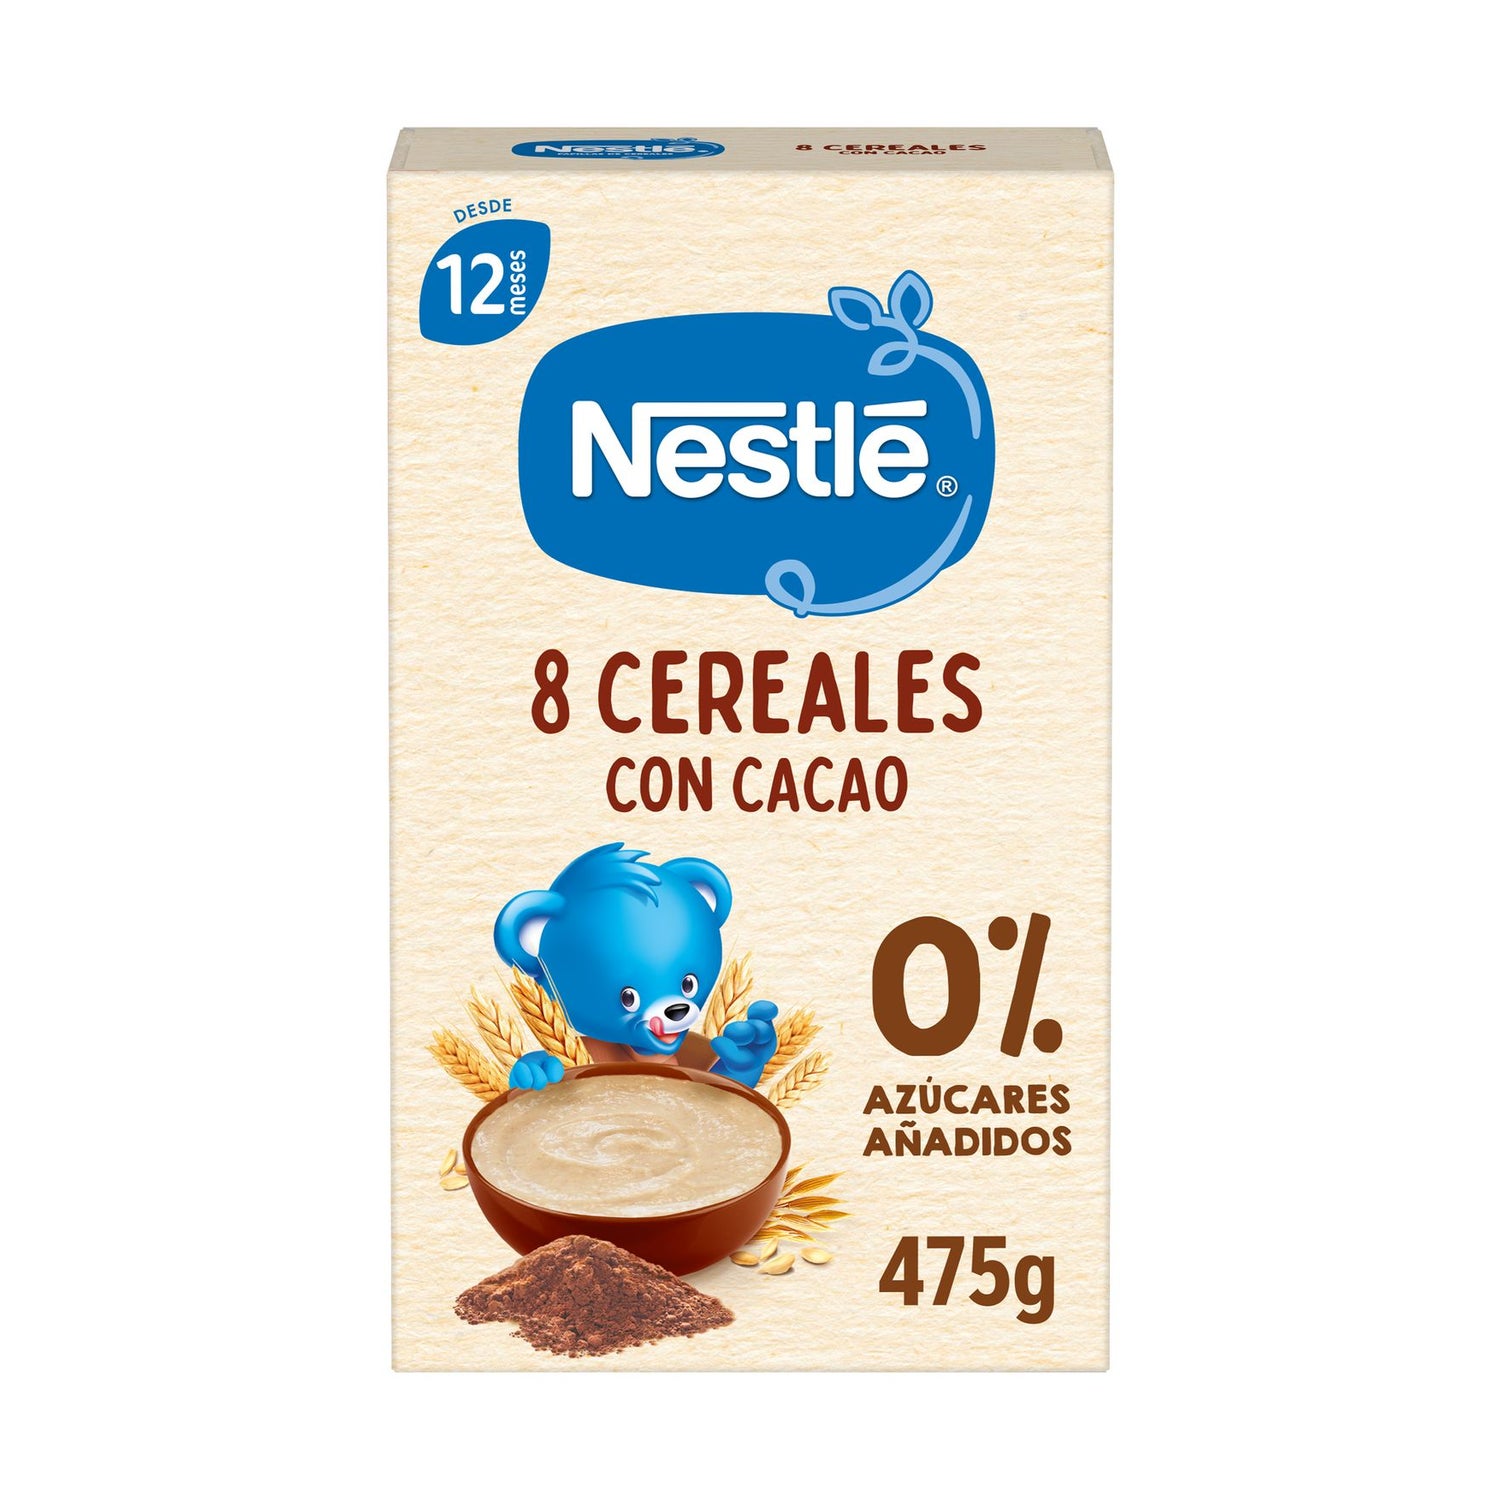 Papilla de cereales Hero Baby 8 cereales con cacao